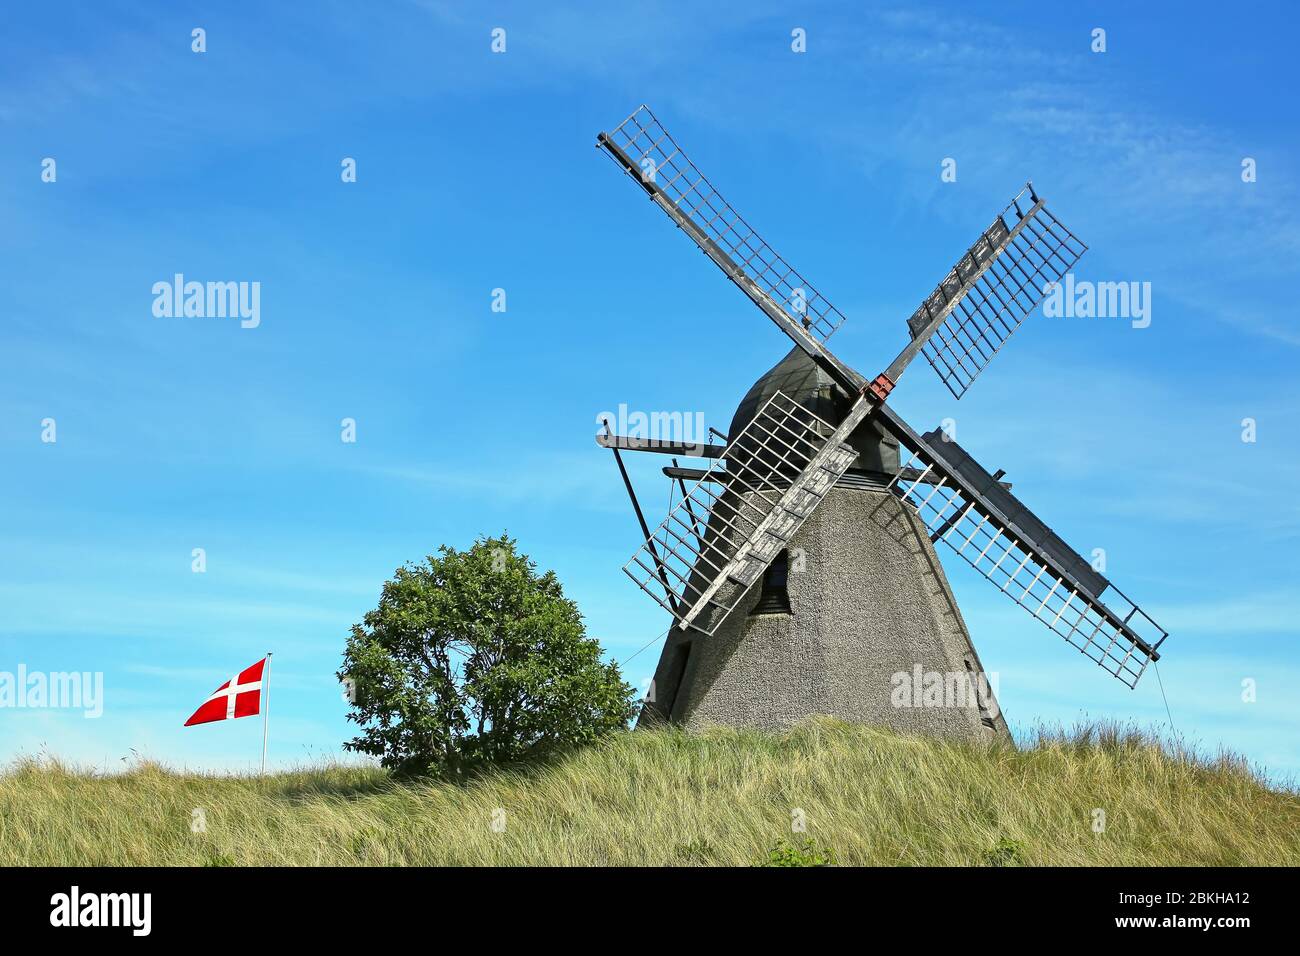 Kragskov mulino a vento dal 1870, è un vecchio mulino olandese situato a Skagen, Danimarca. Foto Stock